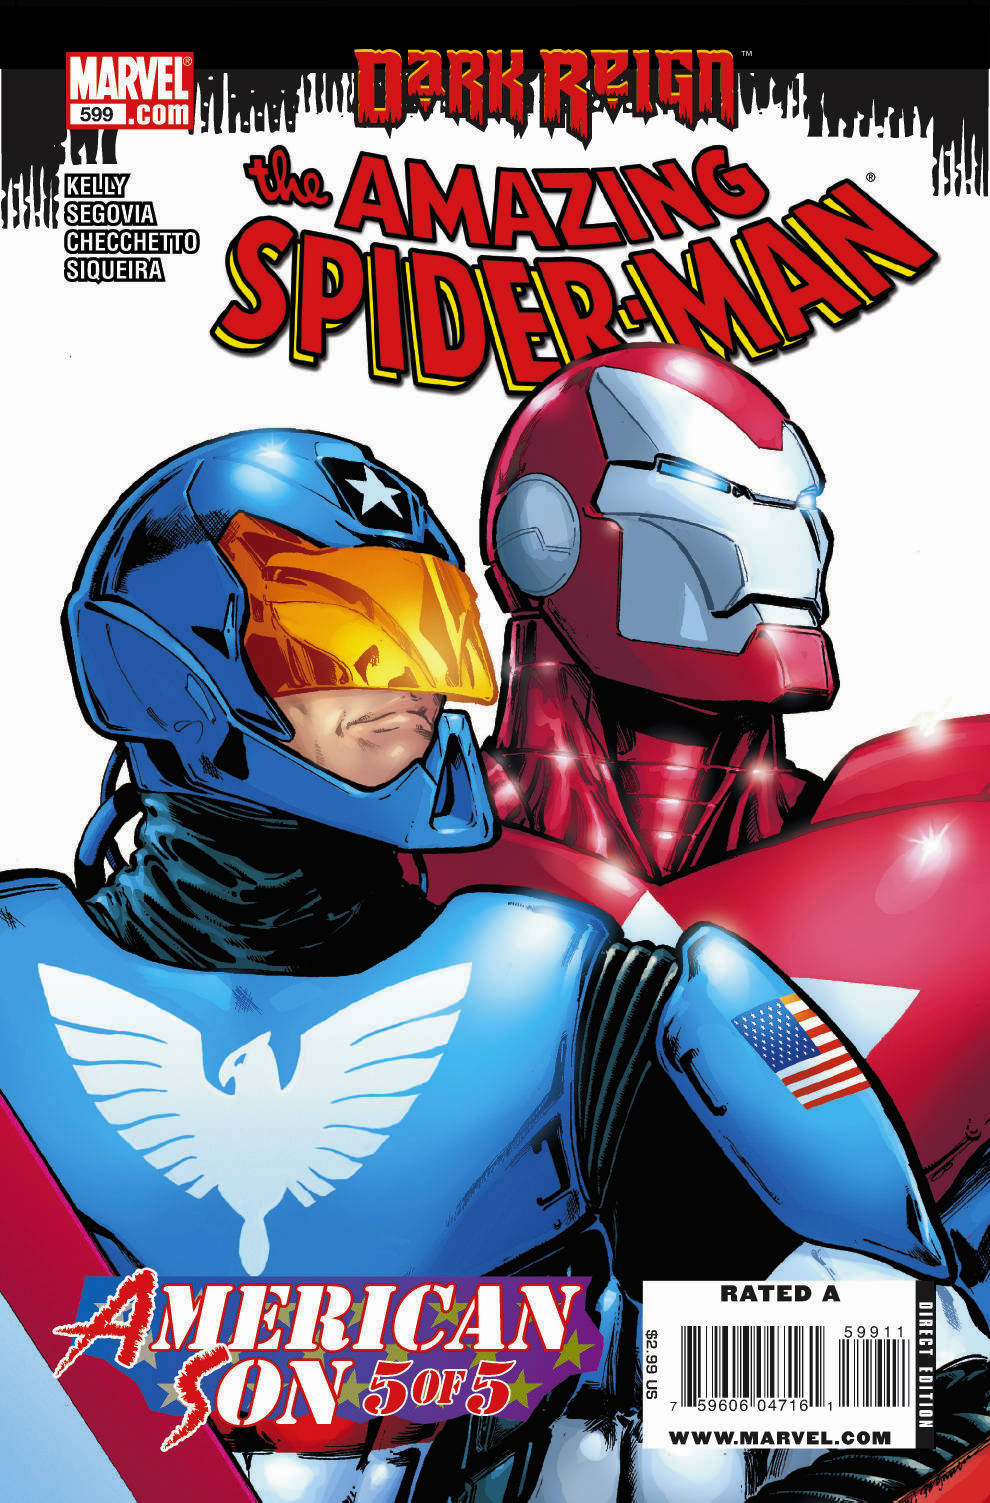 Amazing Spider-Man Vol. 1 #599